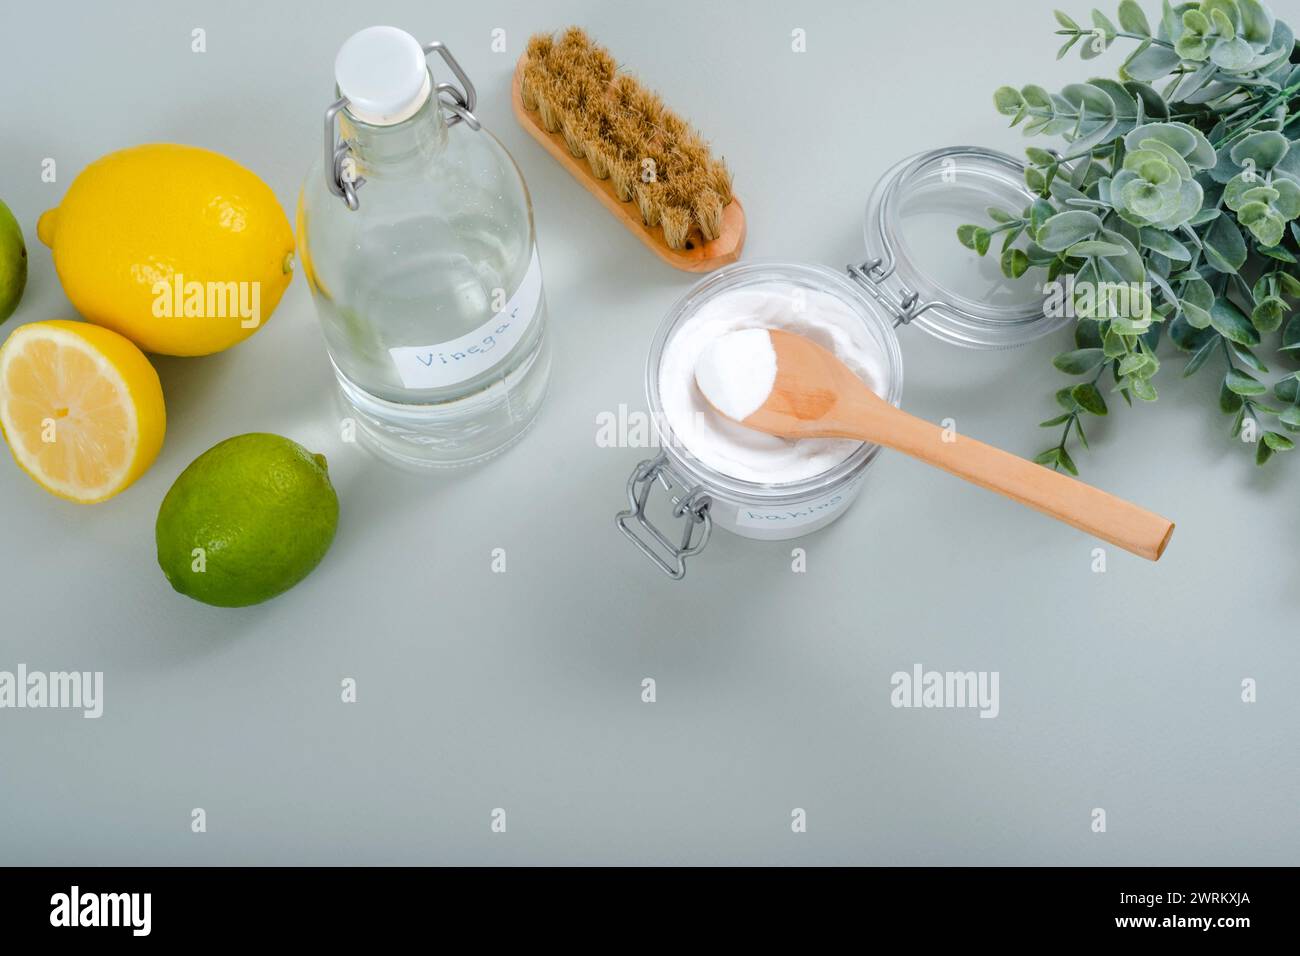 Natürliche Haushaltsreinigungsmittel Natron, Weißessig, Zitrusfrüchte, Pinsel auf grauem Hintergrund. Stockfoto